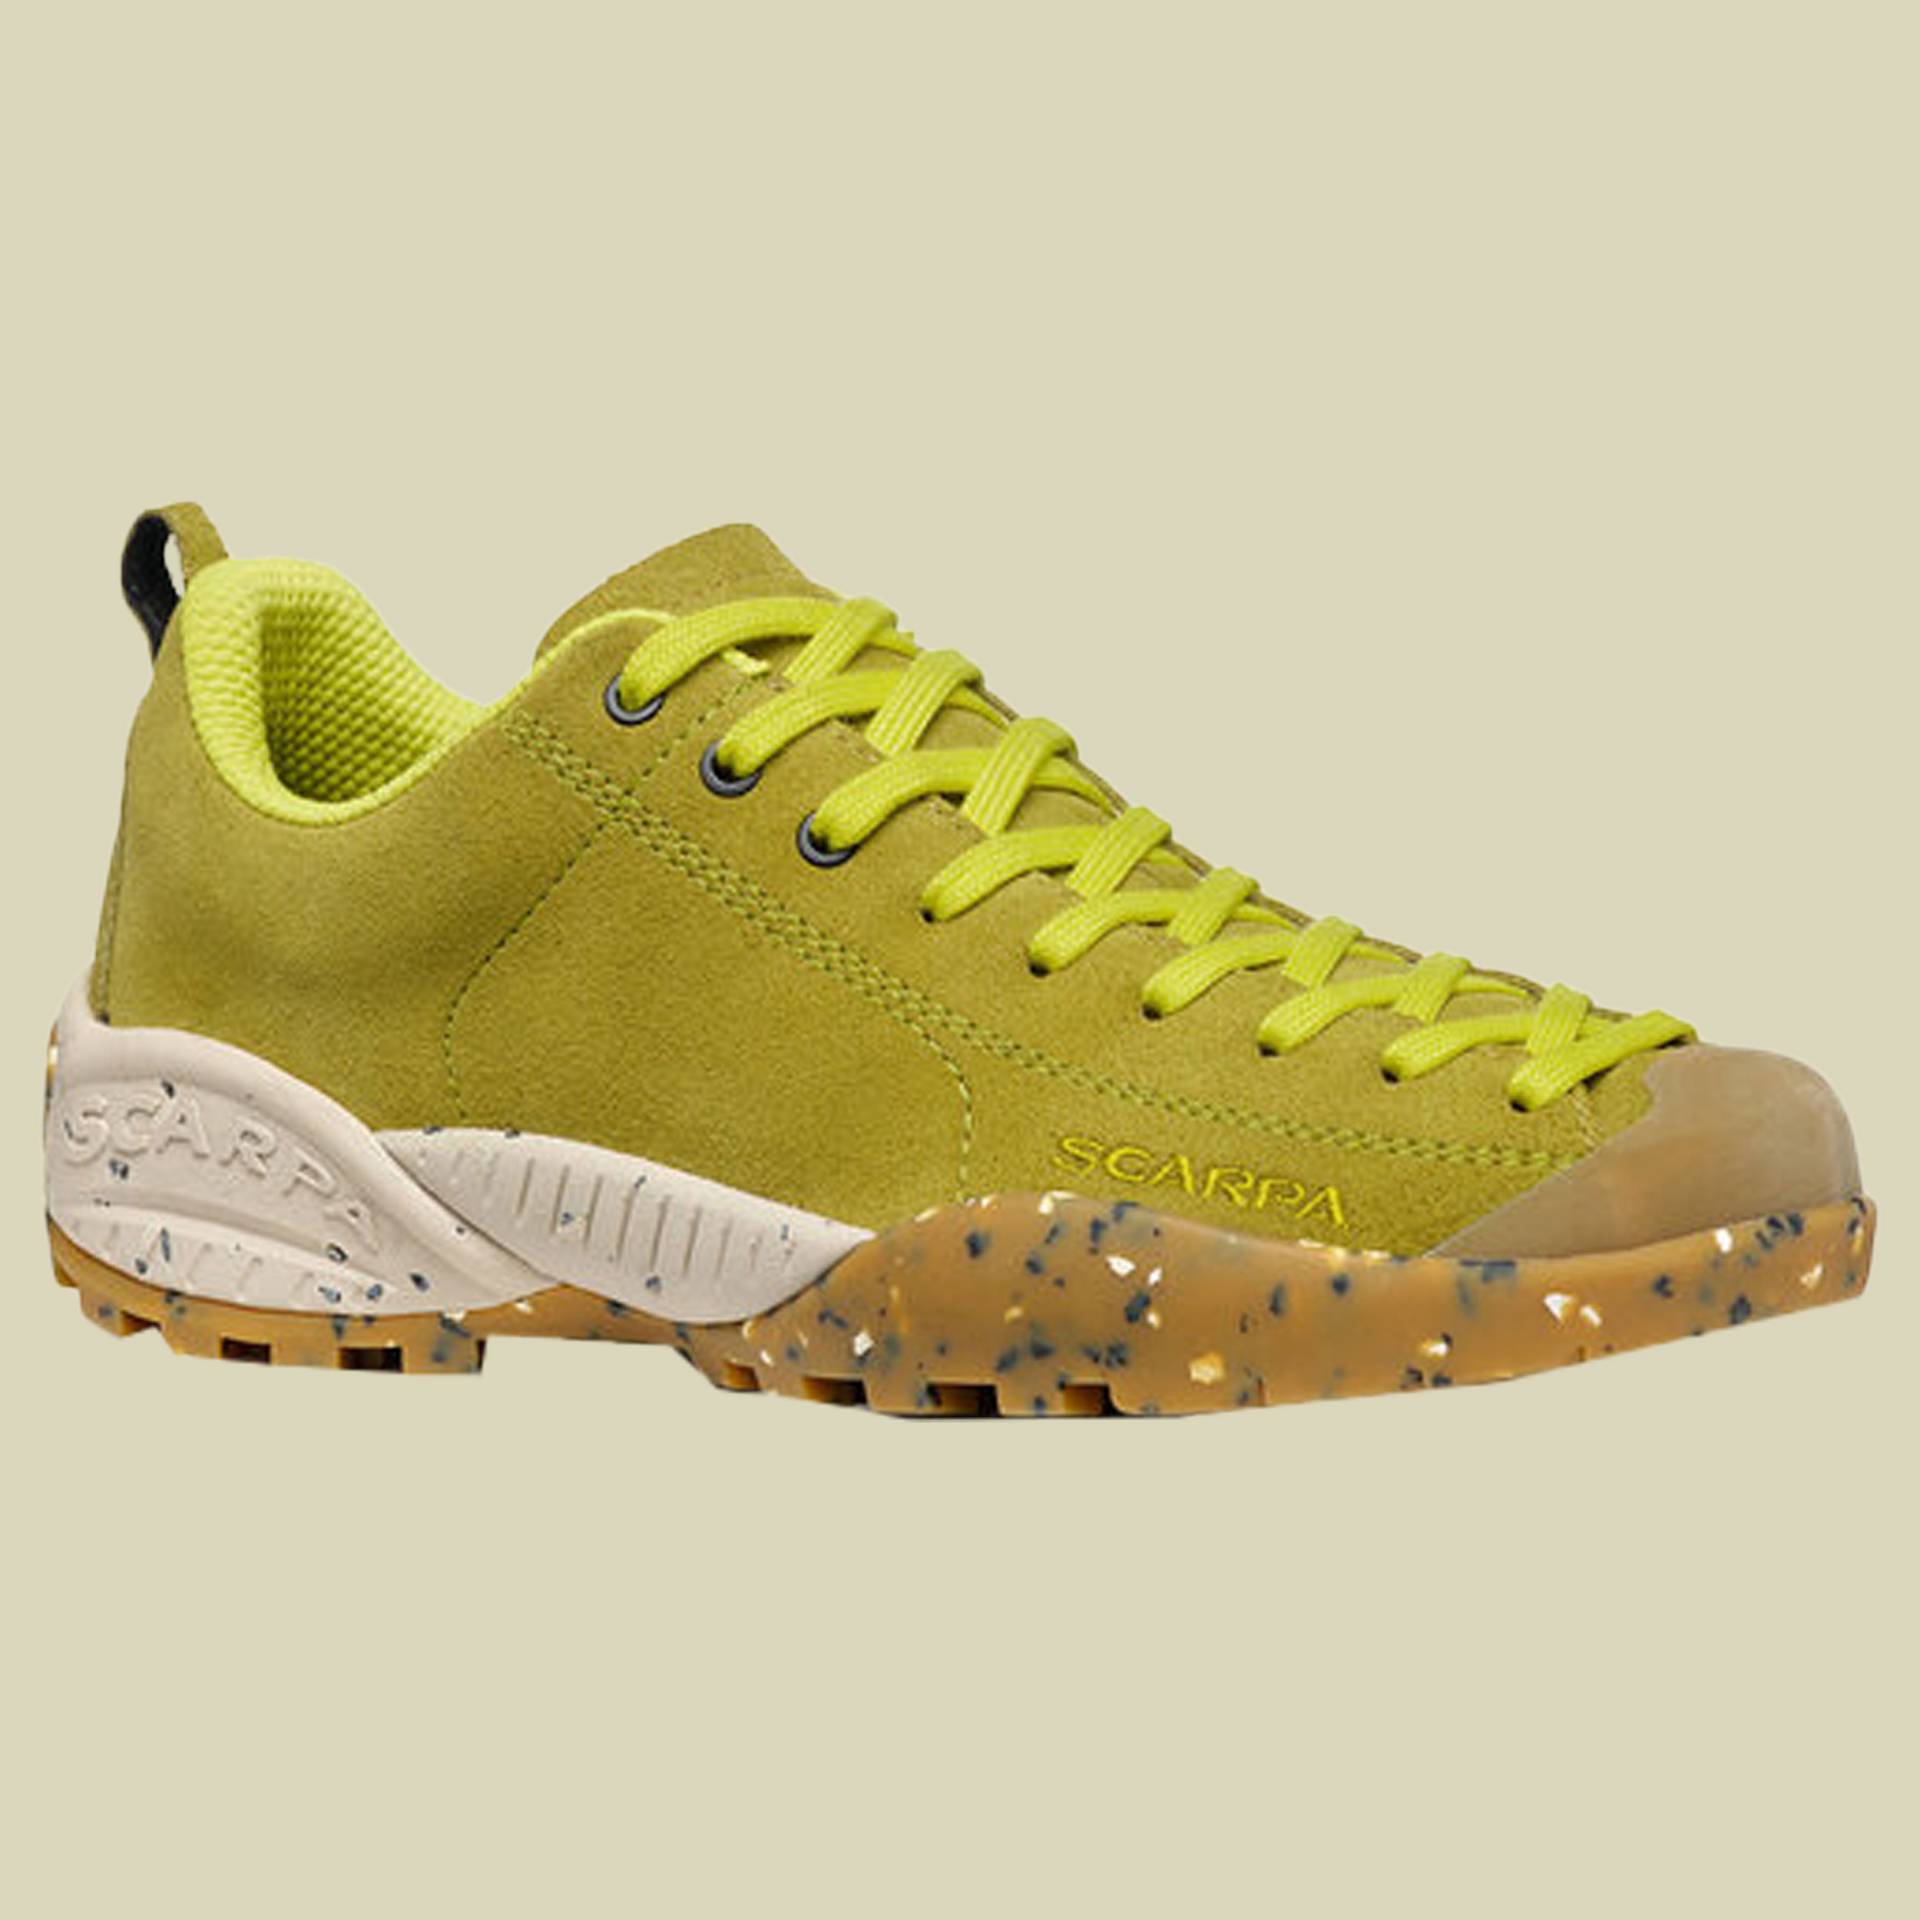 Mojito Planet Suede Women Größe 39 Farbe golden lime von Scarpa Schuhe